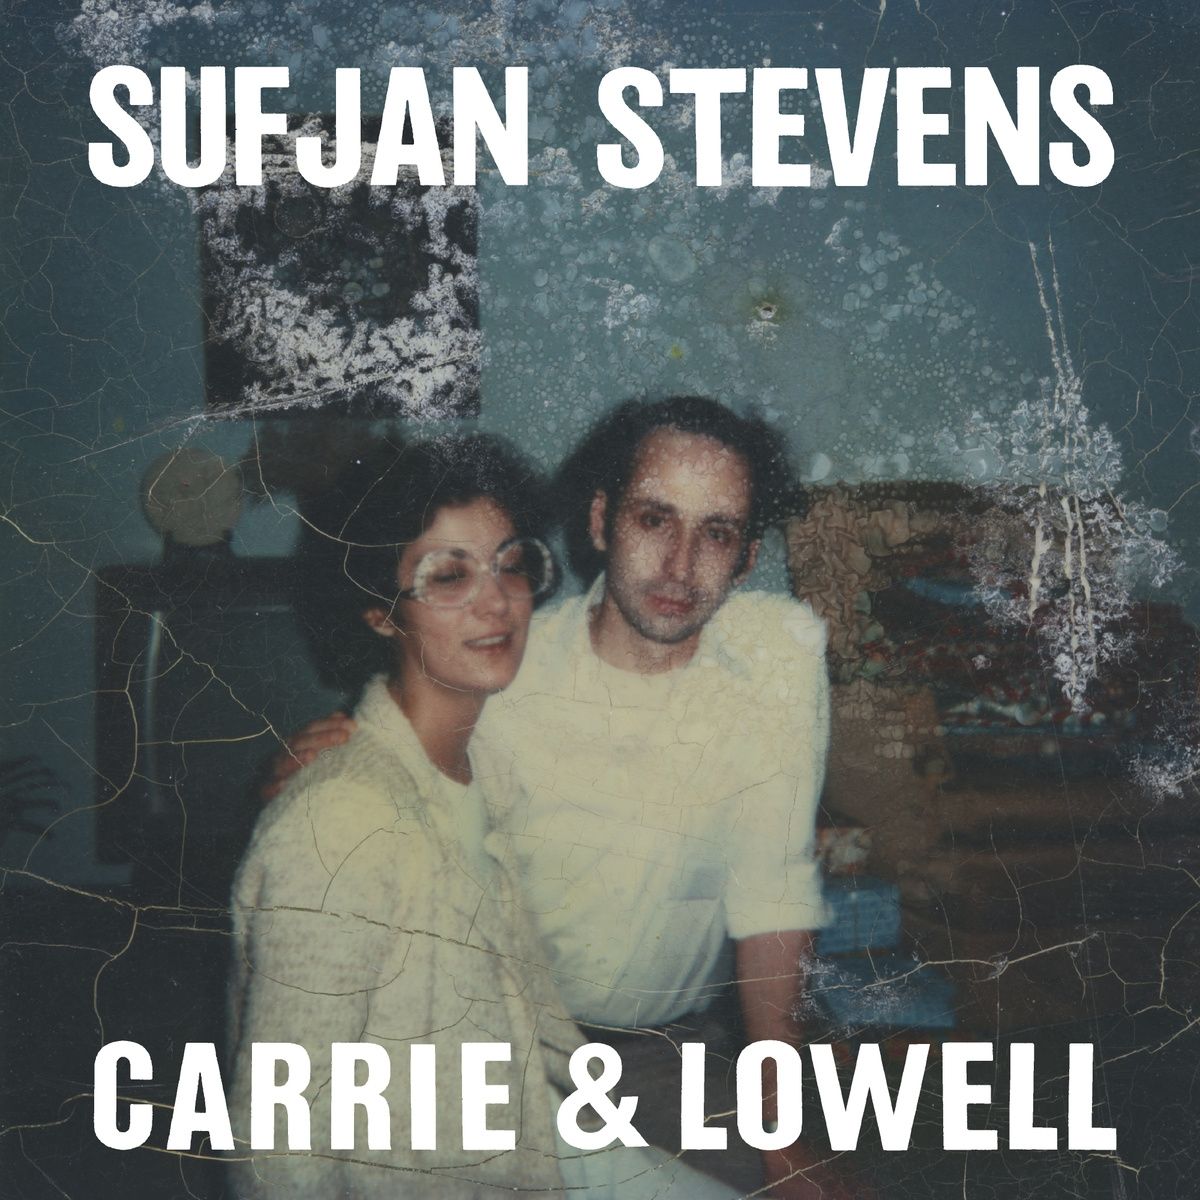 Imagem do álbum Carrie & Lowell do(a) artista Sufjan Stevens